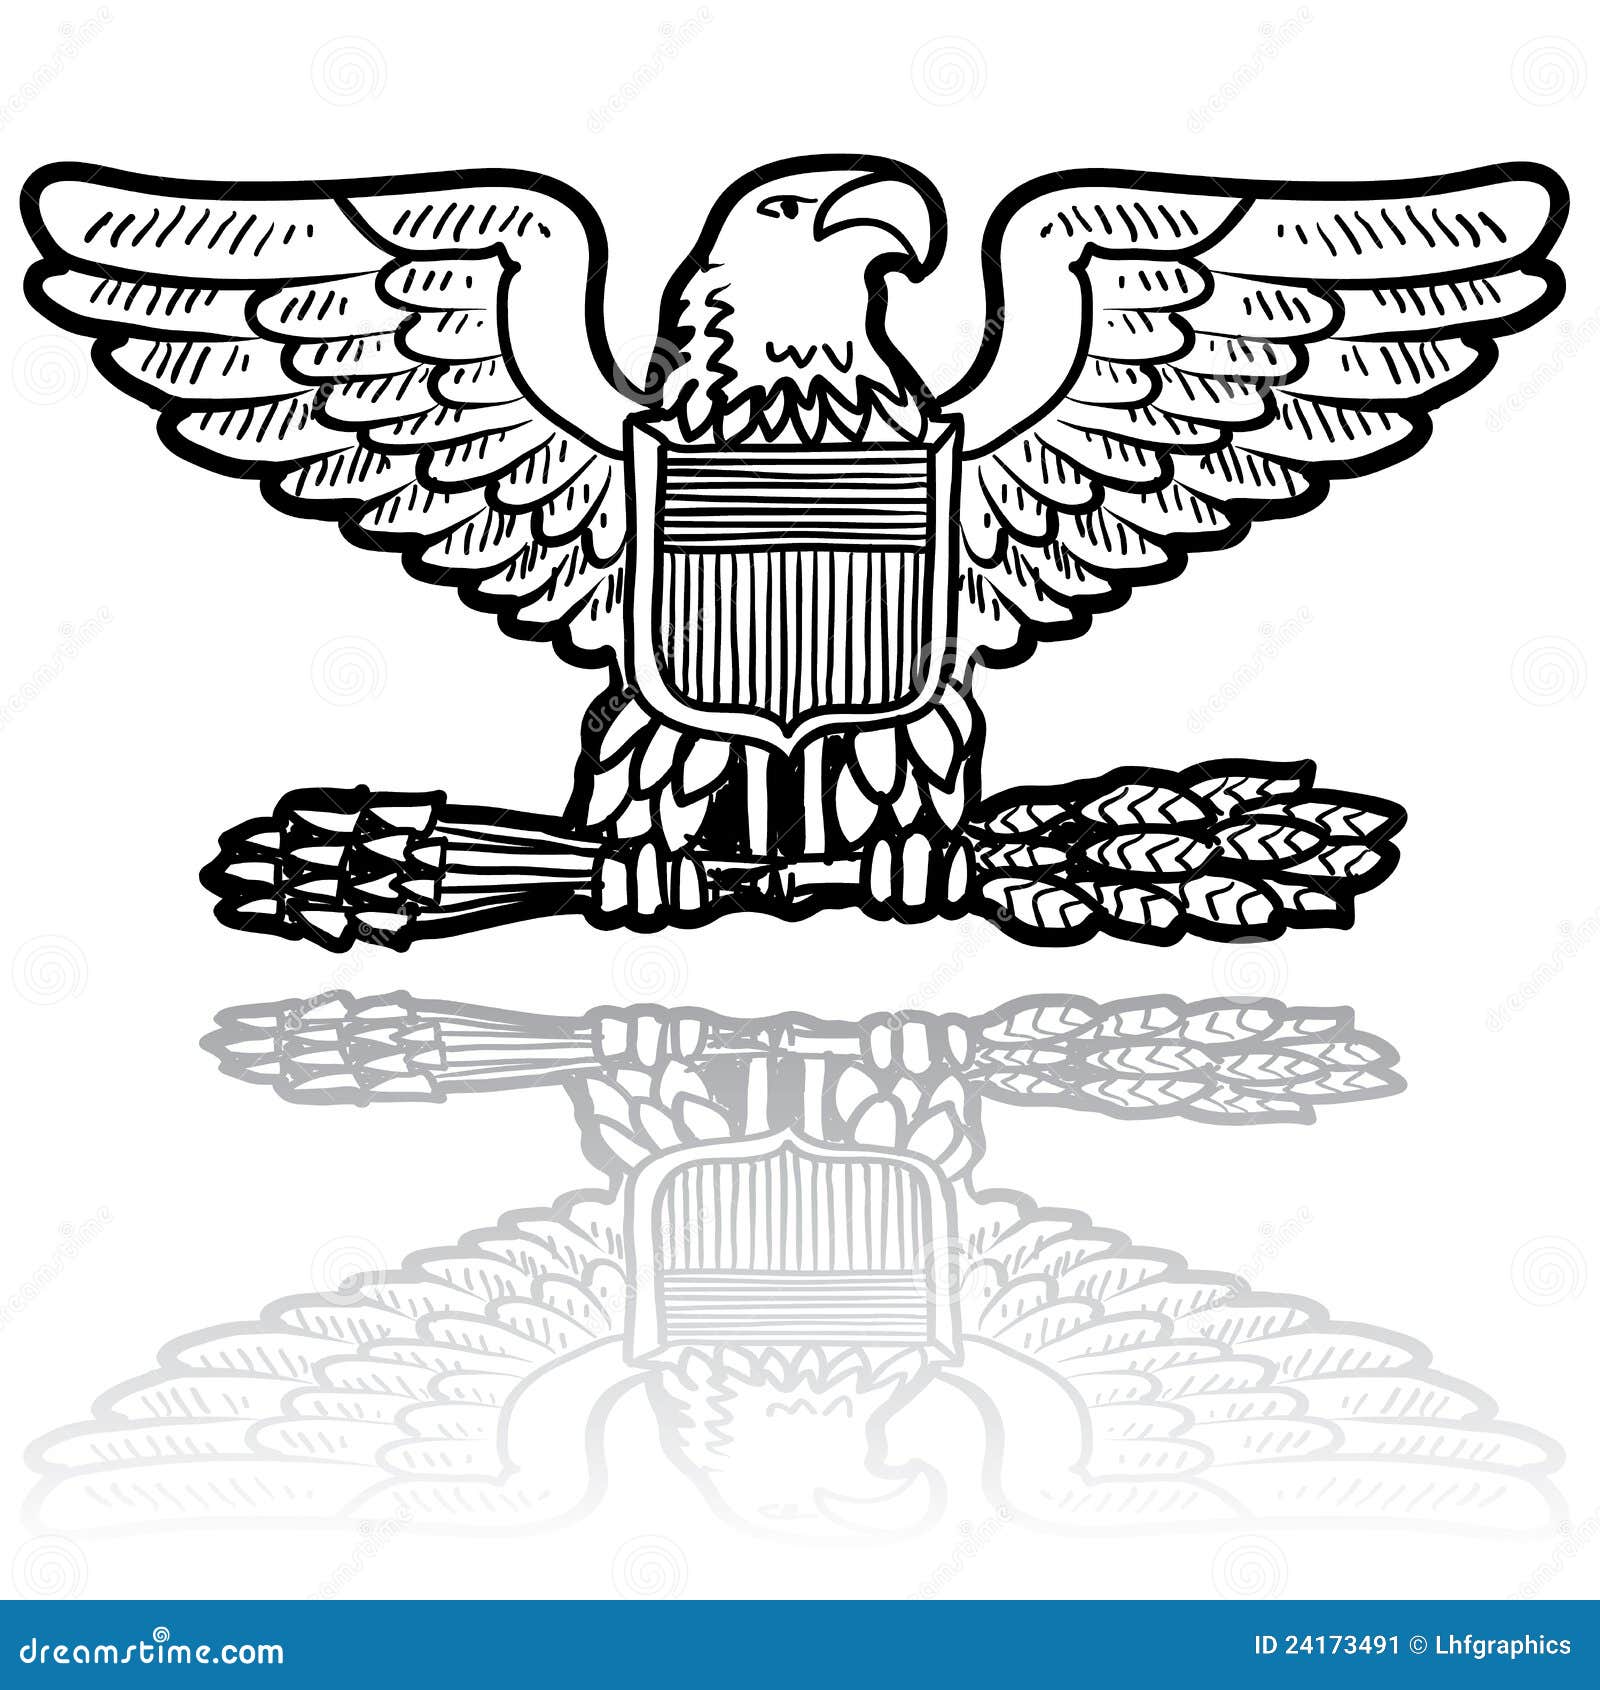 us army eagle insignia